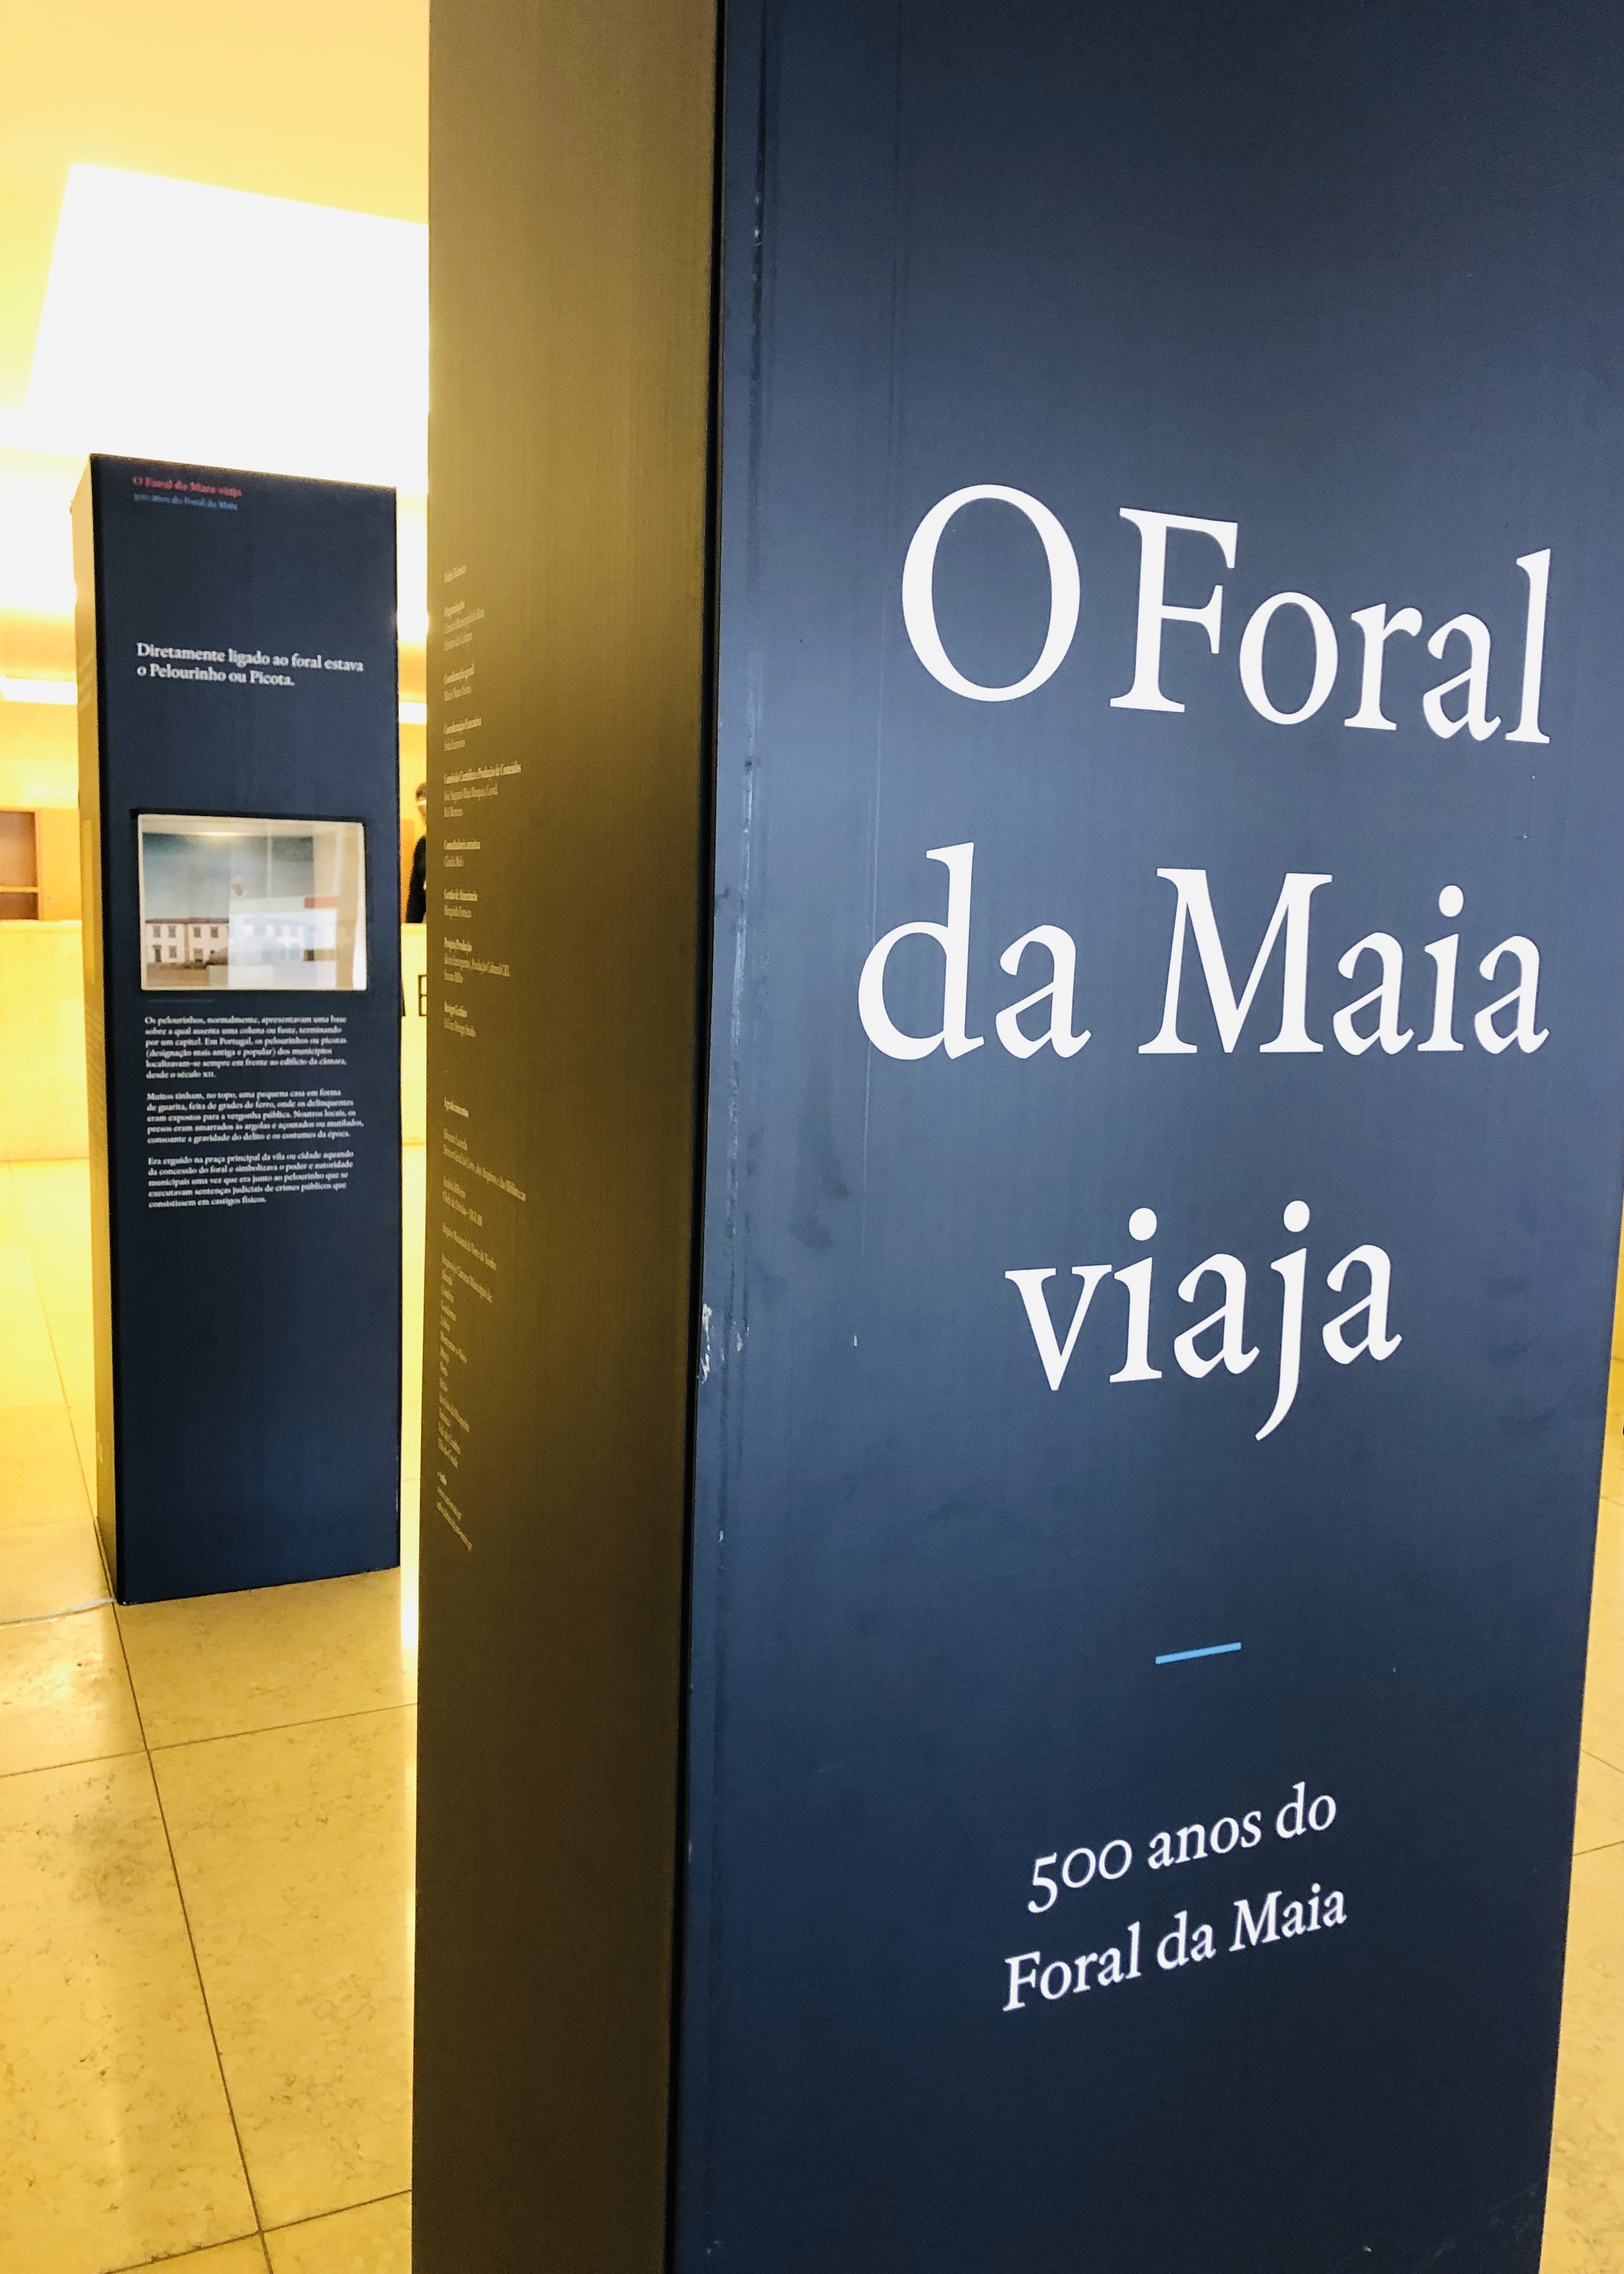 500 anos do Foral da Maia também se comemoram no TECMAIA